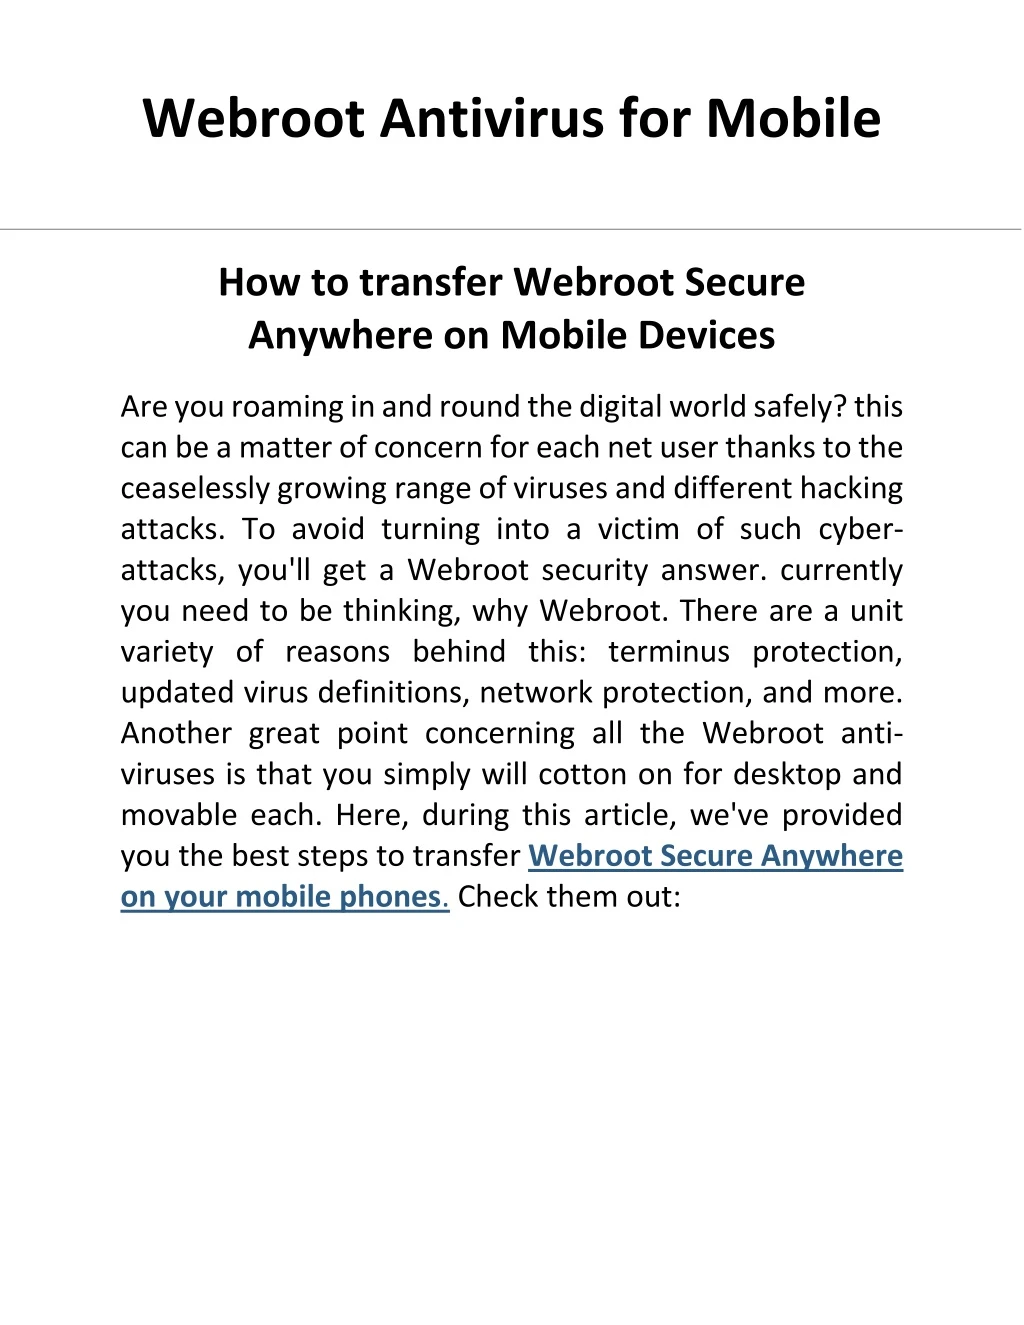 webroot antivirus for mobile